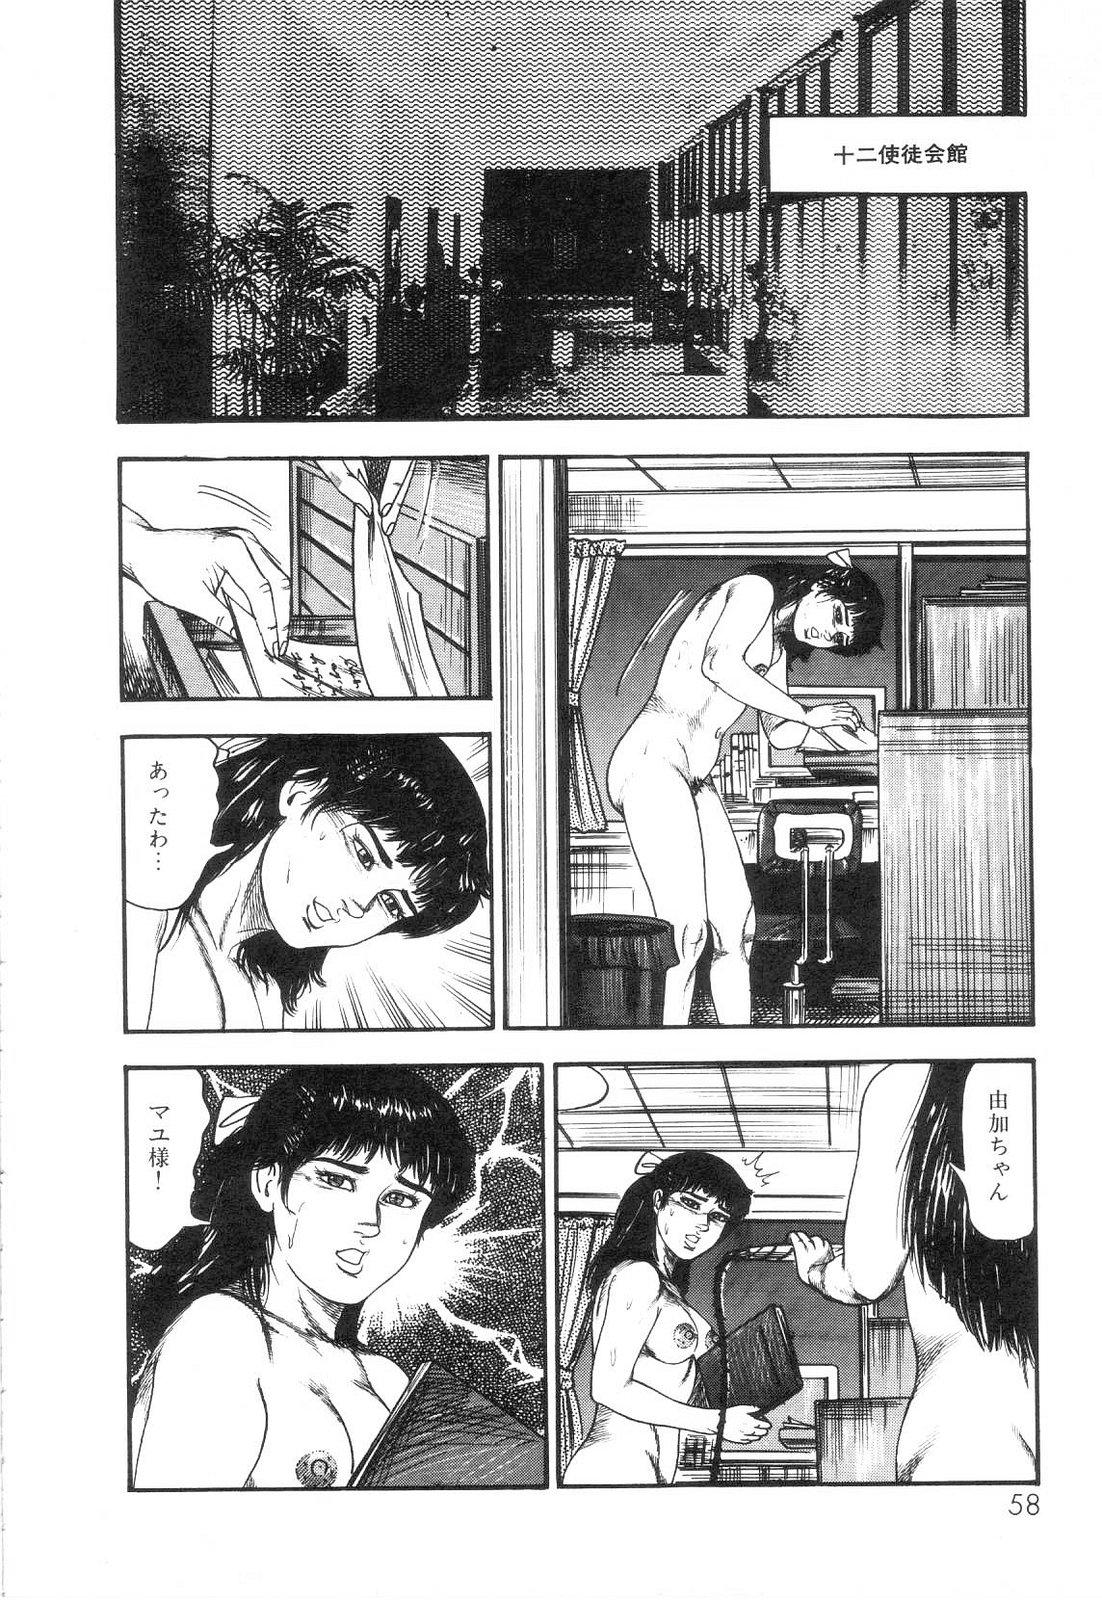 Shiro no Mokushiroku Vol. 6 - Juuai Erika no Shou 59